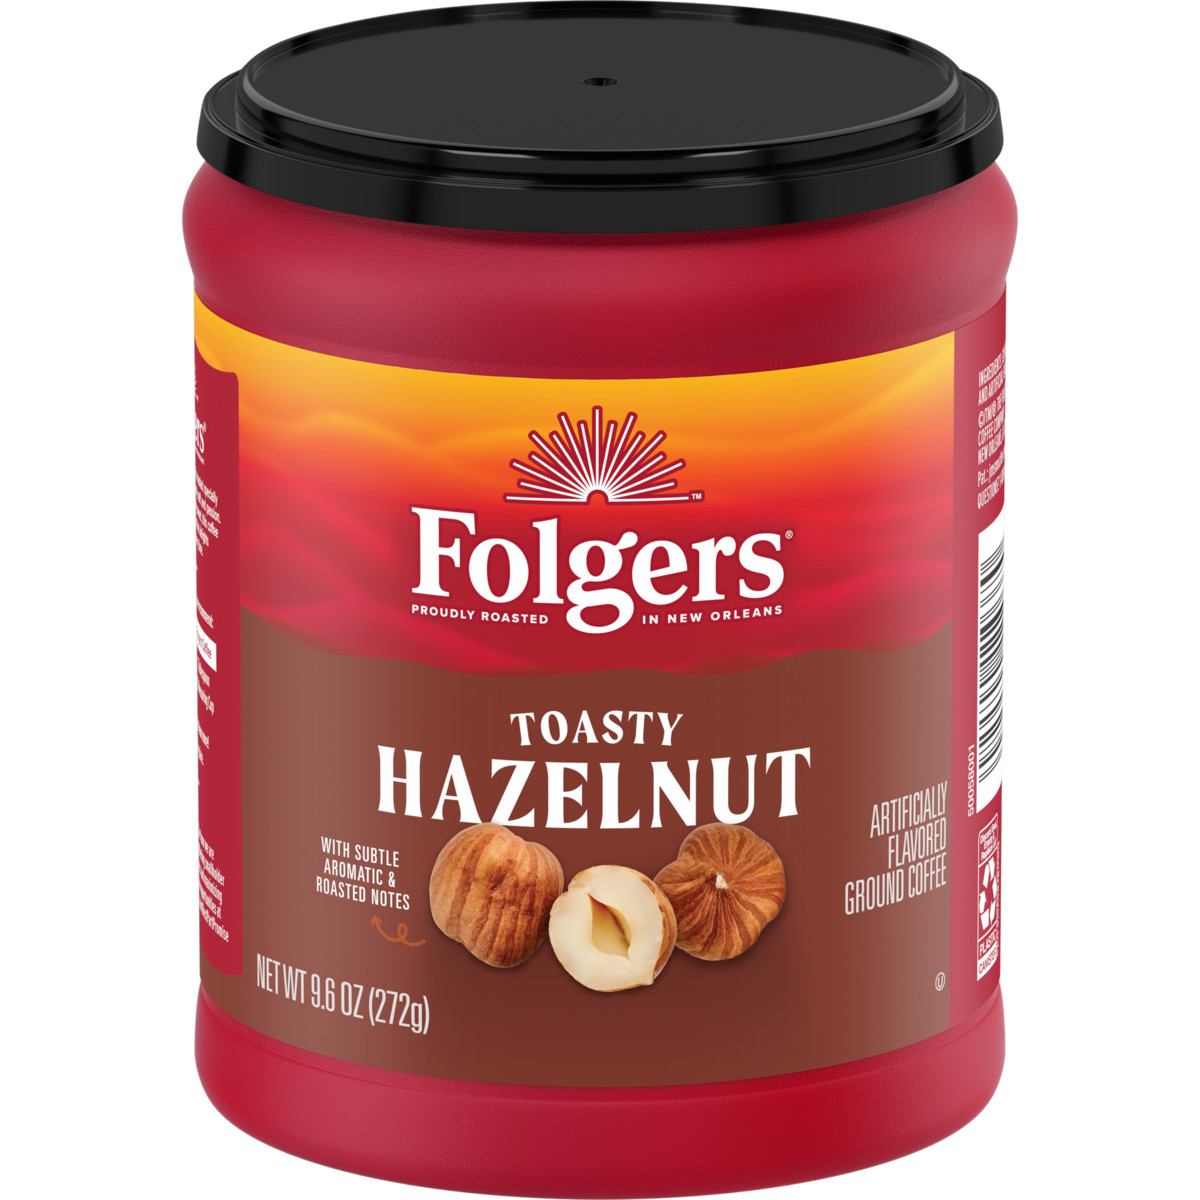 Toasty Hazelnut Flavored Coffee 